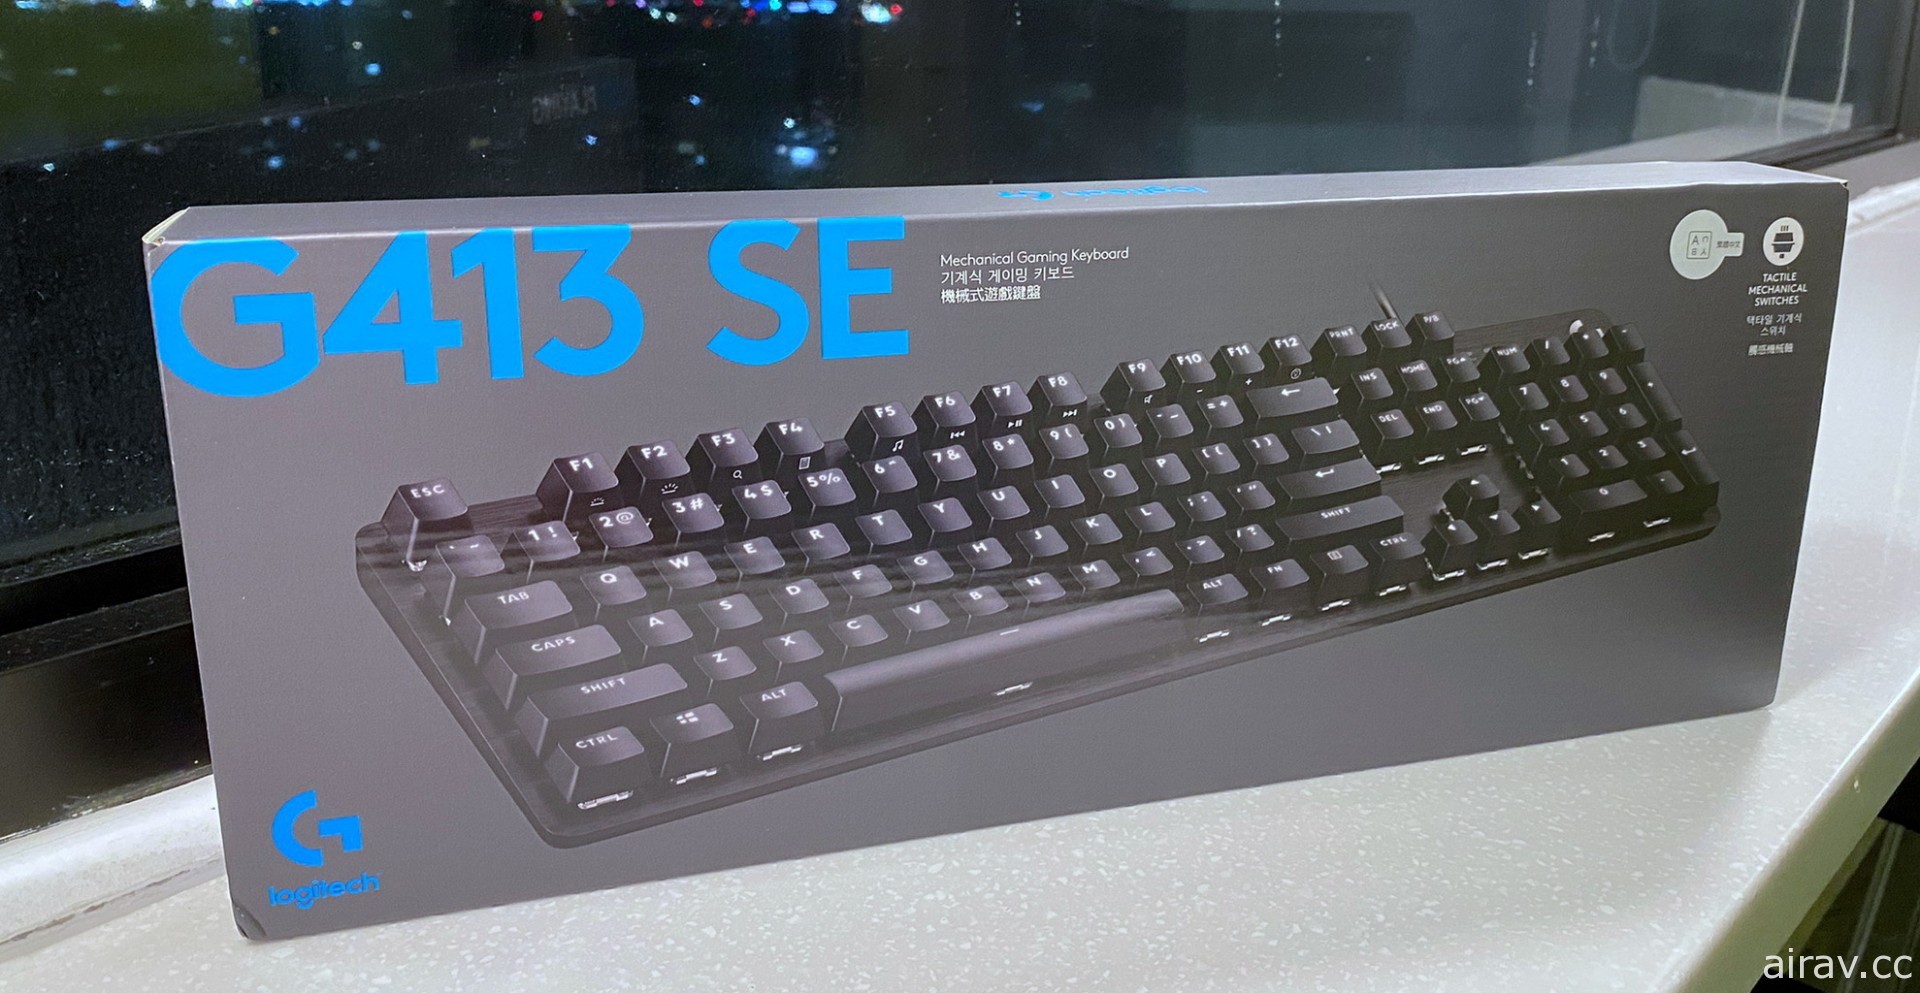 羅技 G 新款遊戲耳機 G535、鍵盤 G413 SE 簡易開箱 預定 6 月 20 日上市